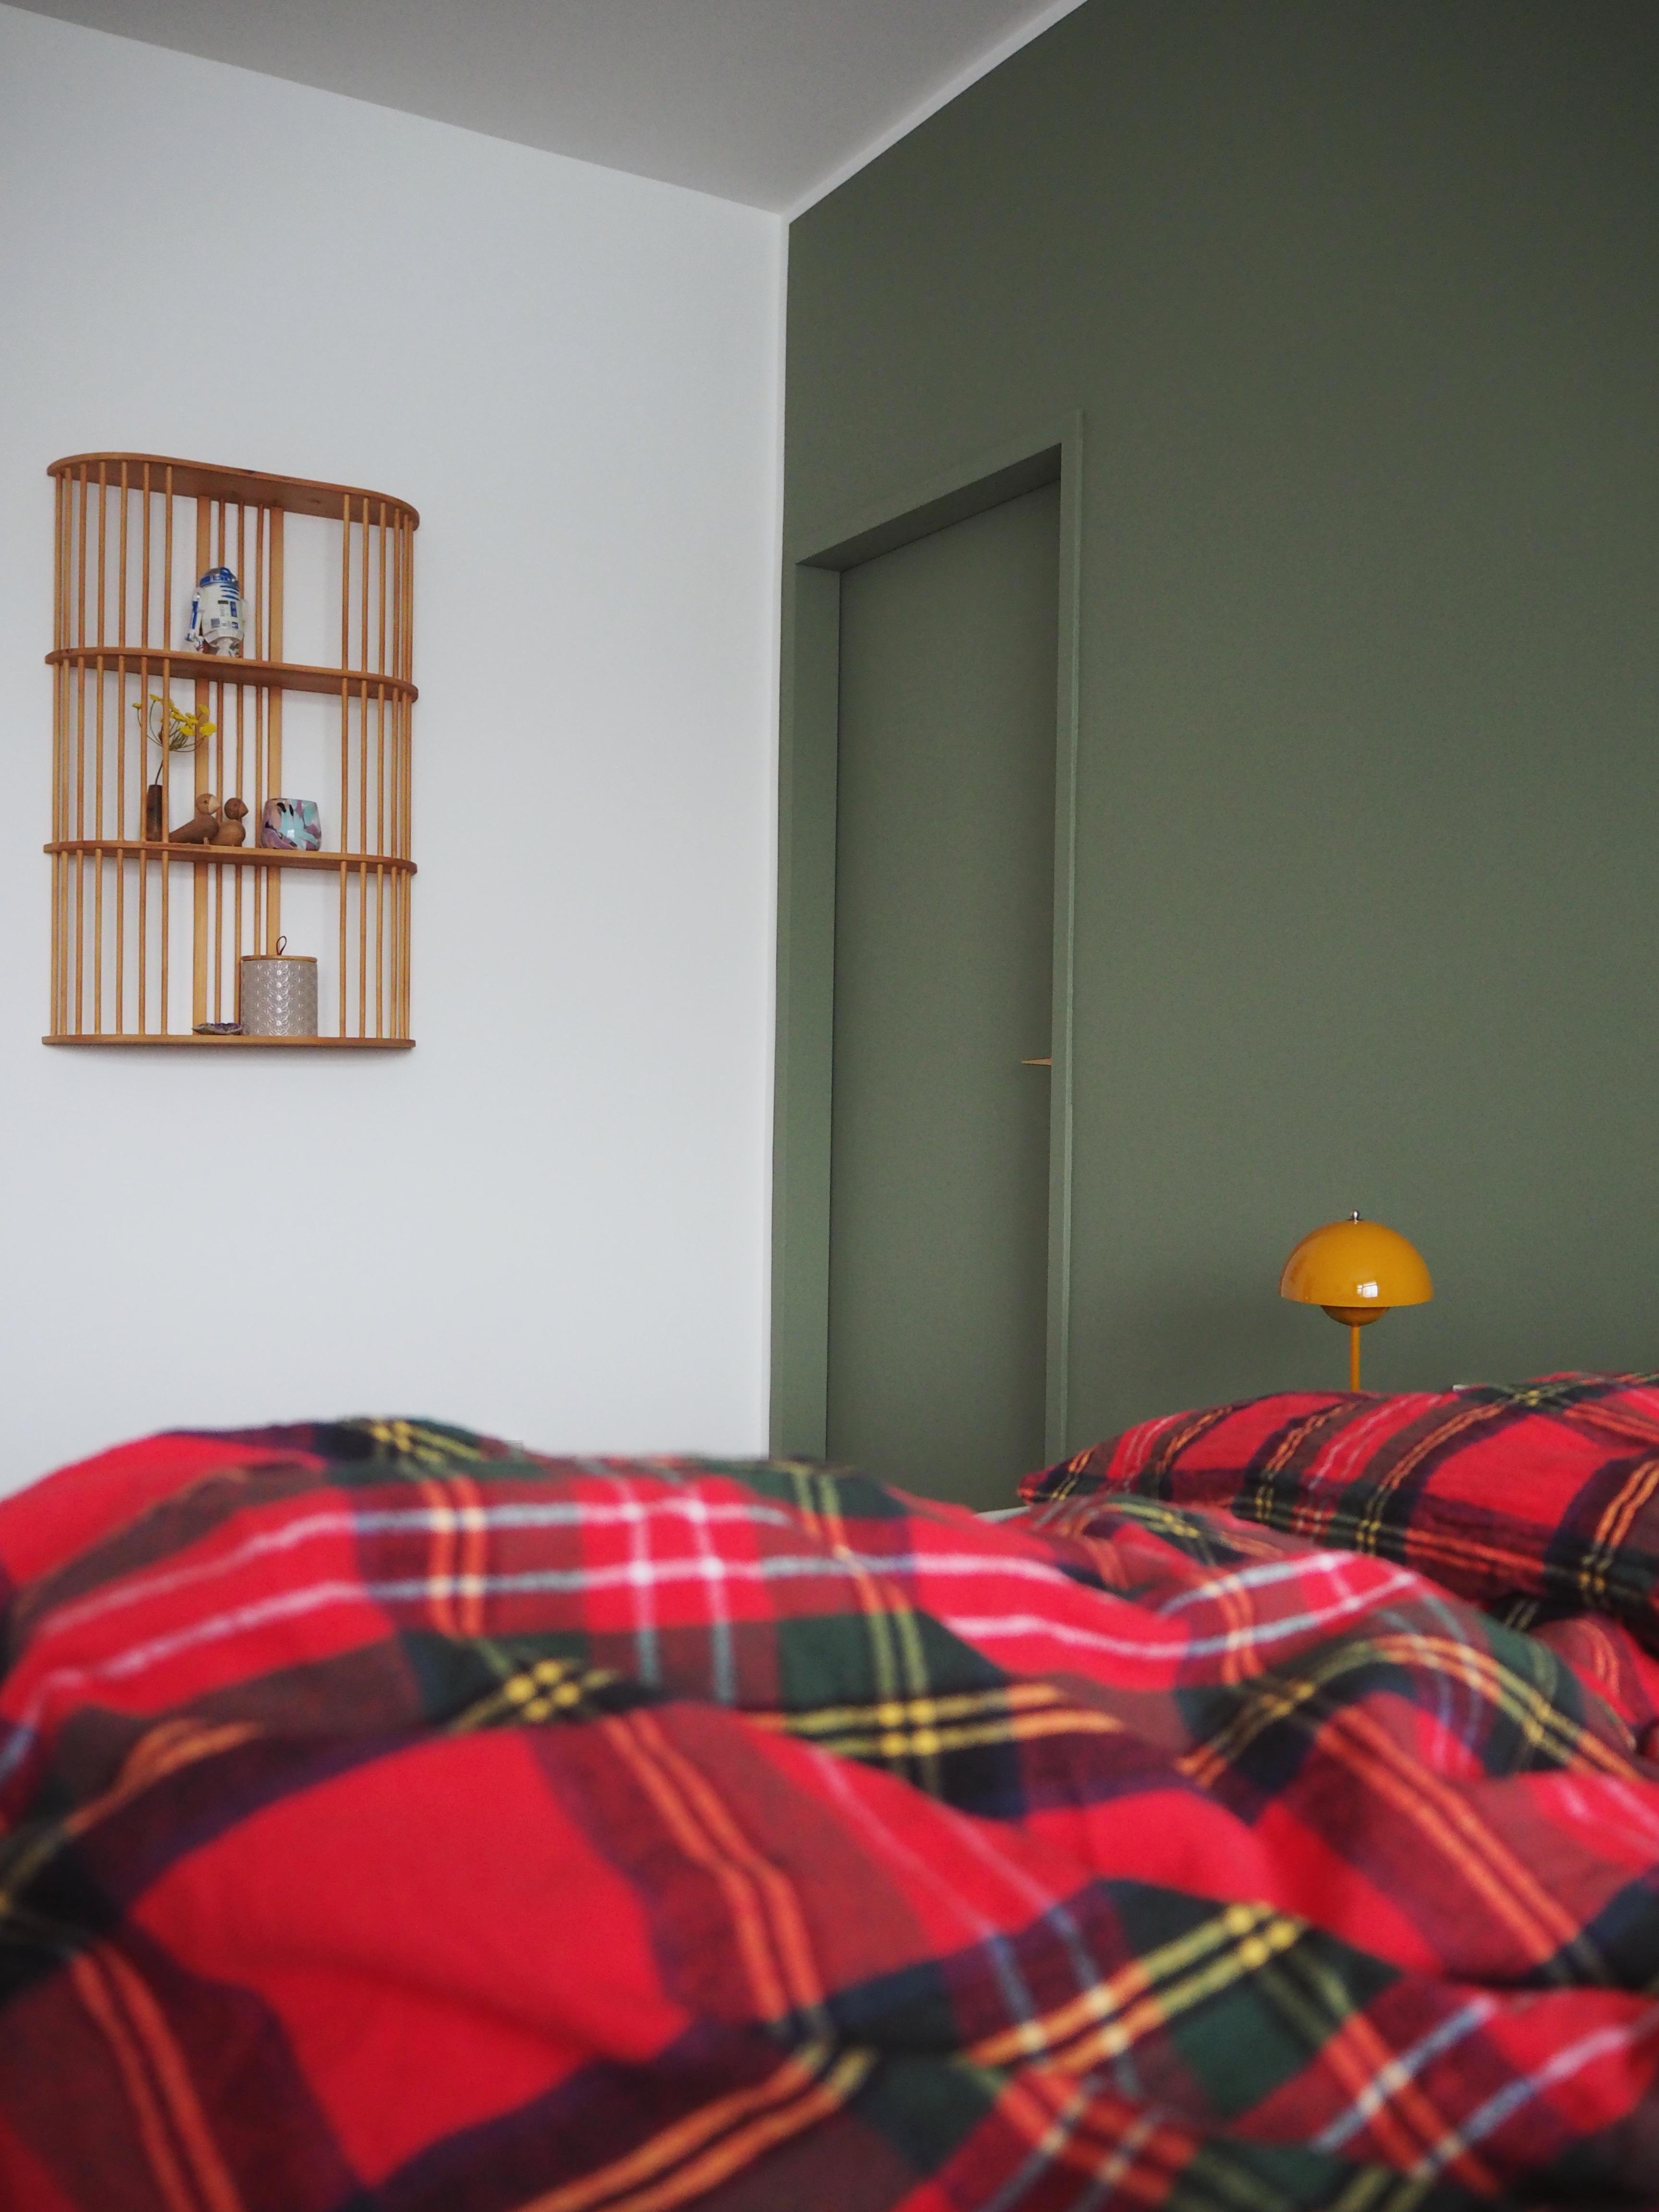 green bedroom wall #schlazimmer #bedroom #grün